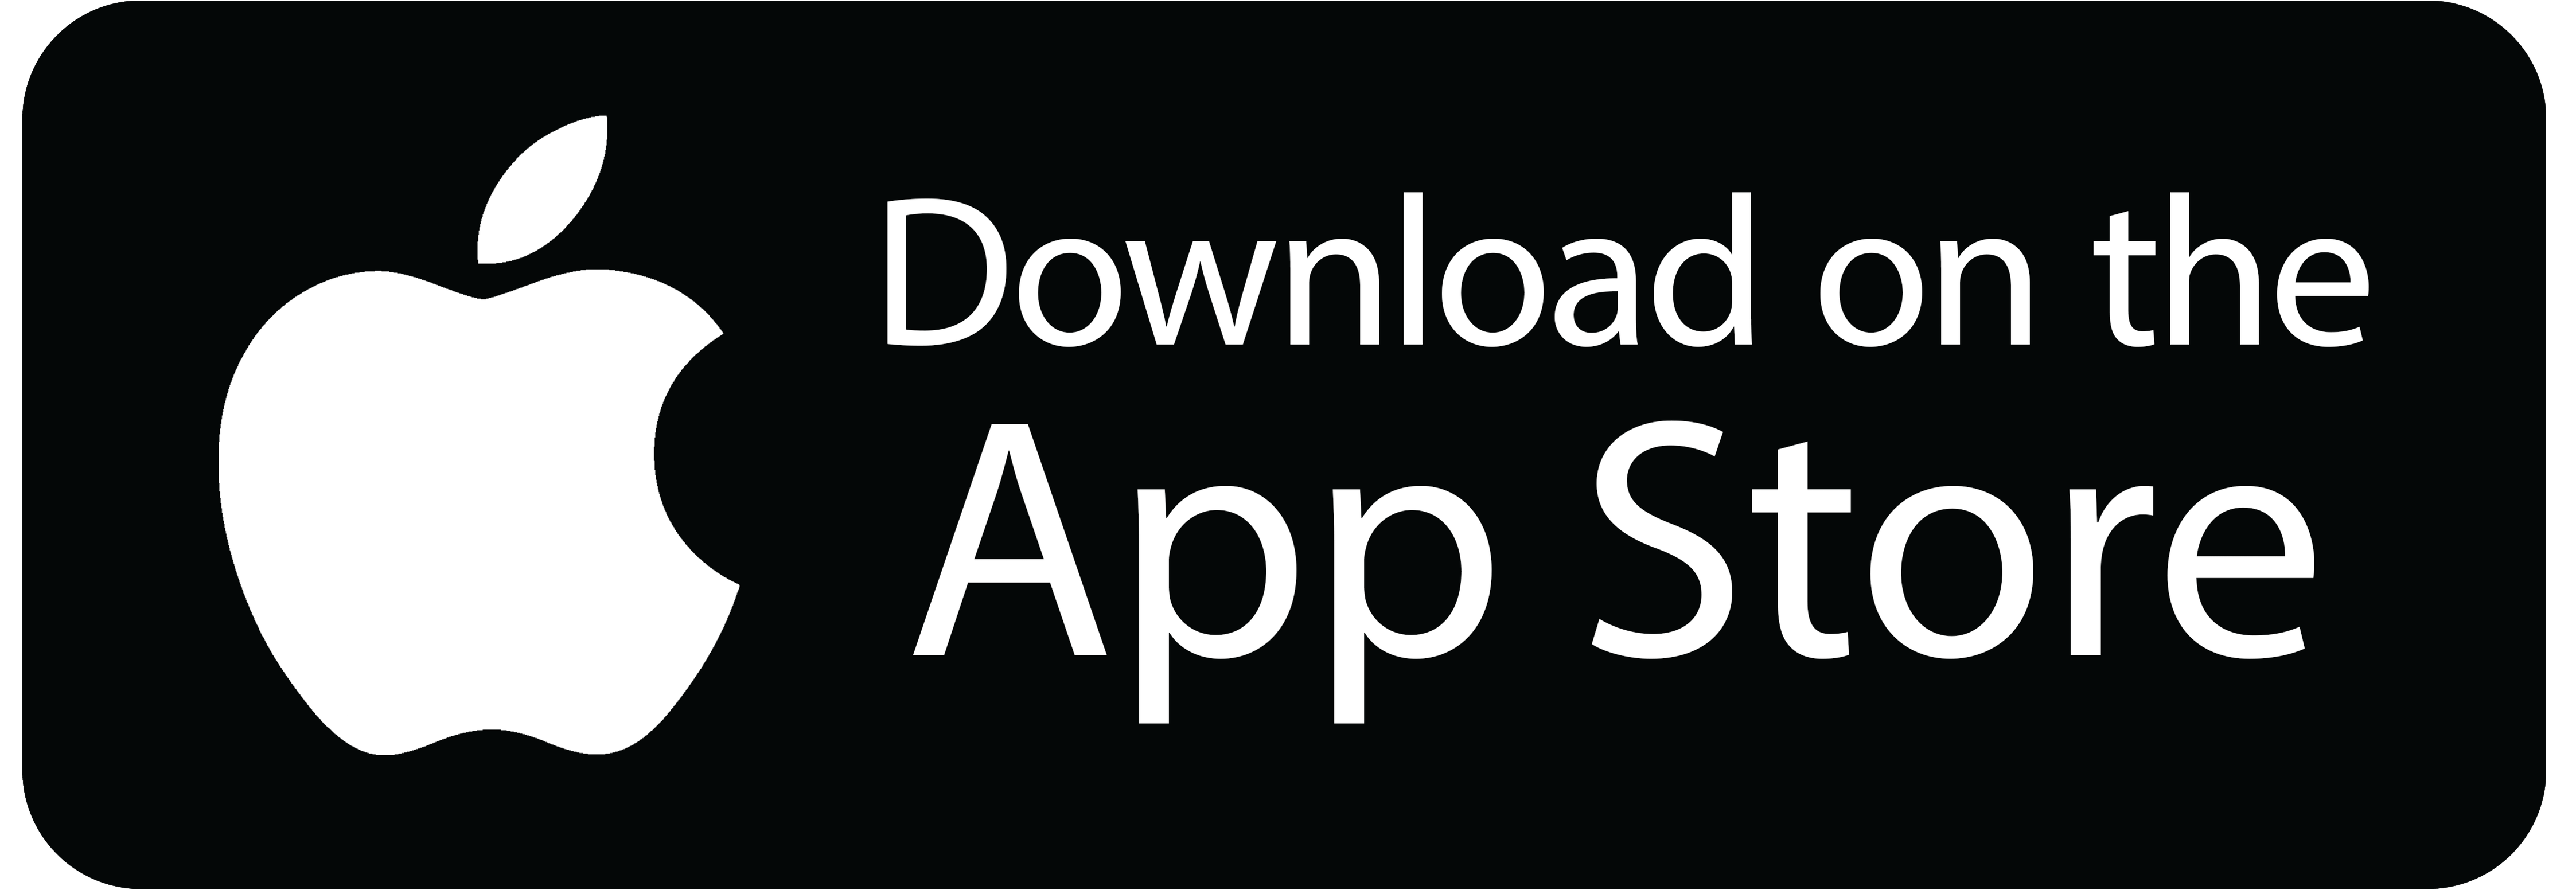  Обзор приложения Canva - продвинутый фотошоп в кармане Мультимедиа  - itunes-app-store-logo